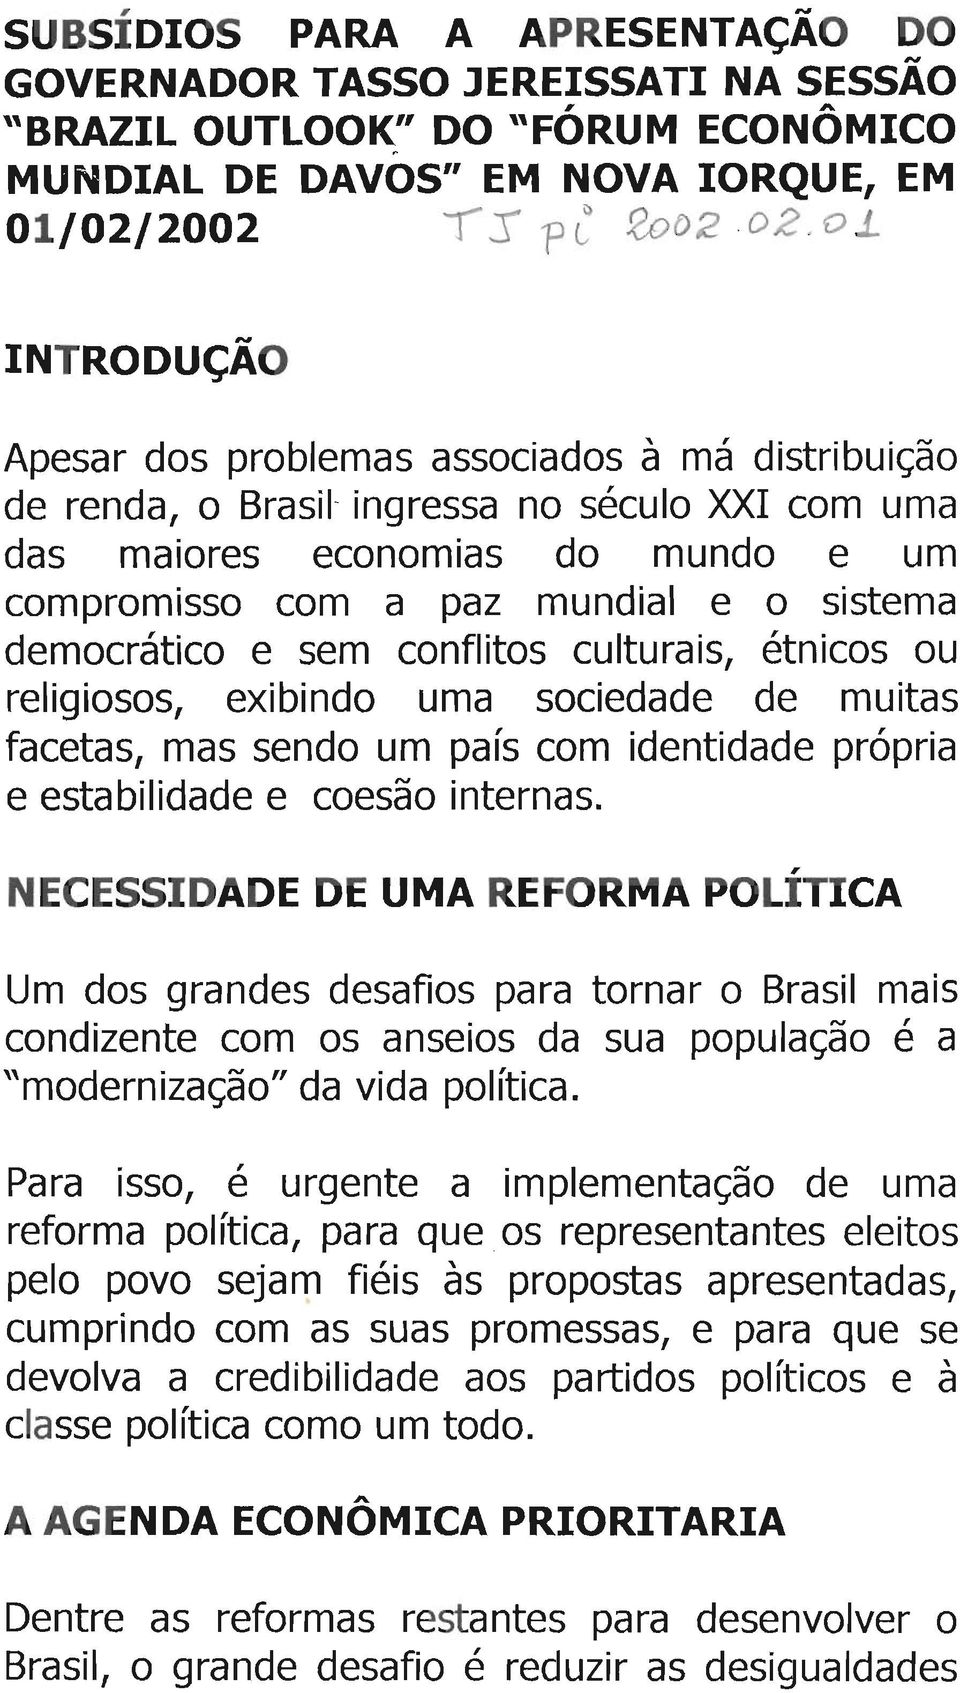 Um dos grandes desafios para tornar o Brasil mais condizente com os anseios da sua população é a "modernização" da vida política.